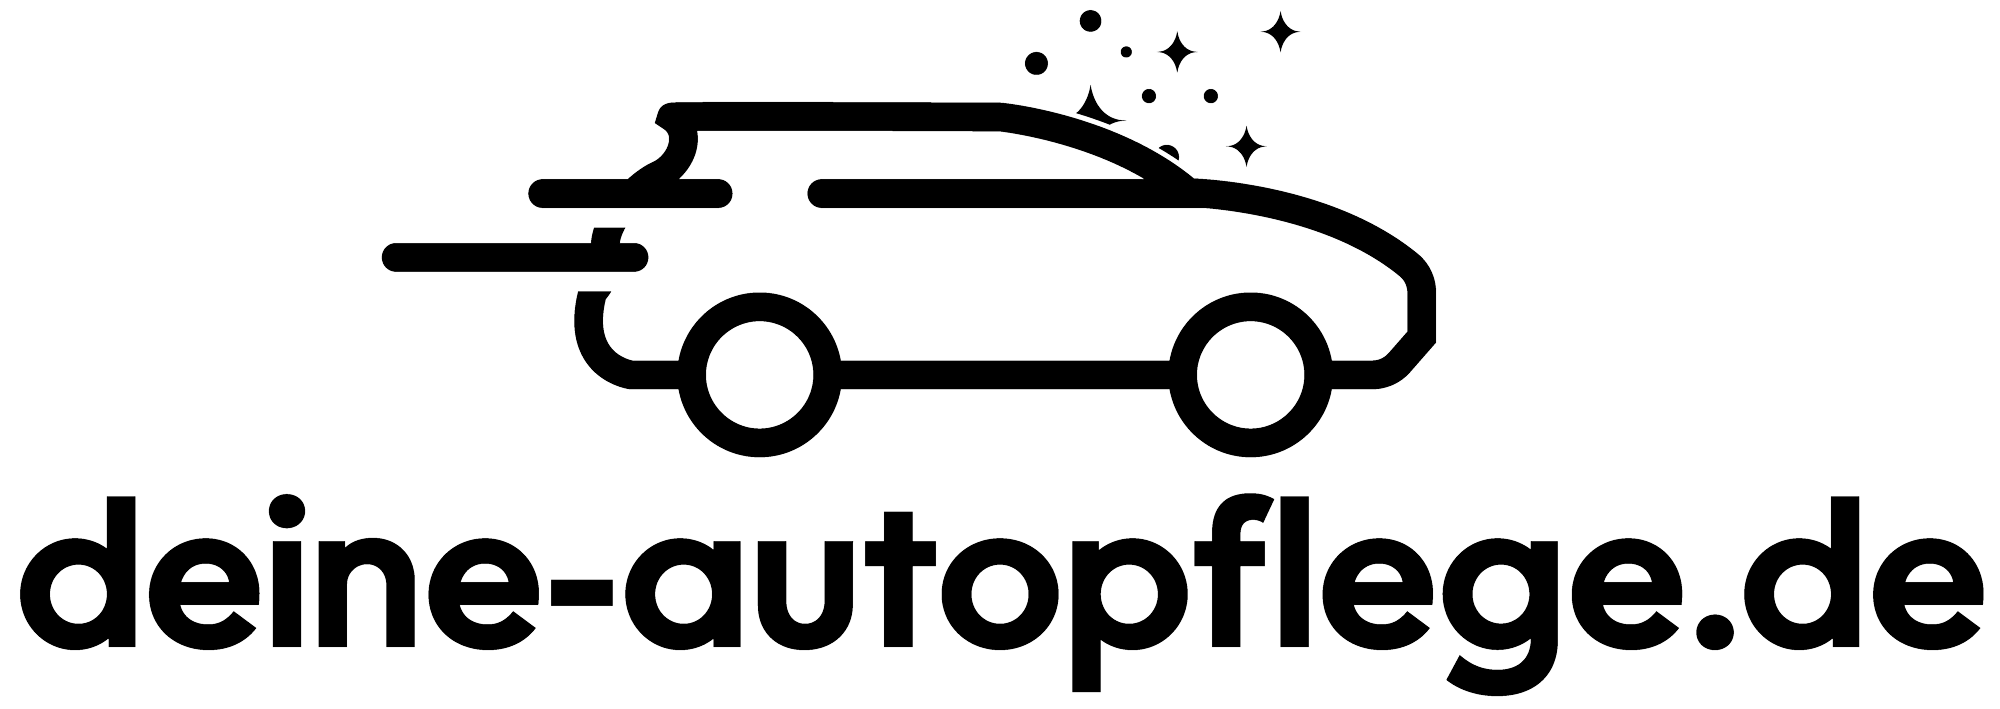 https://deine-autopflege.de/media/image/g0/6d/c5/logo-deineuautopflege.png